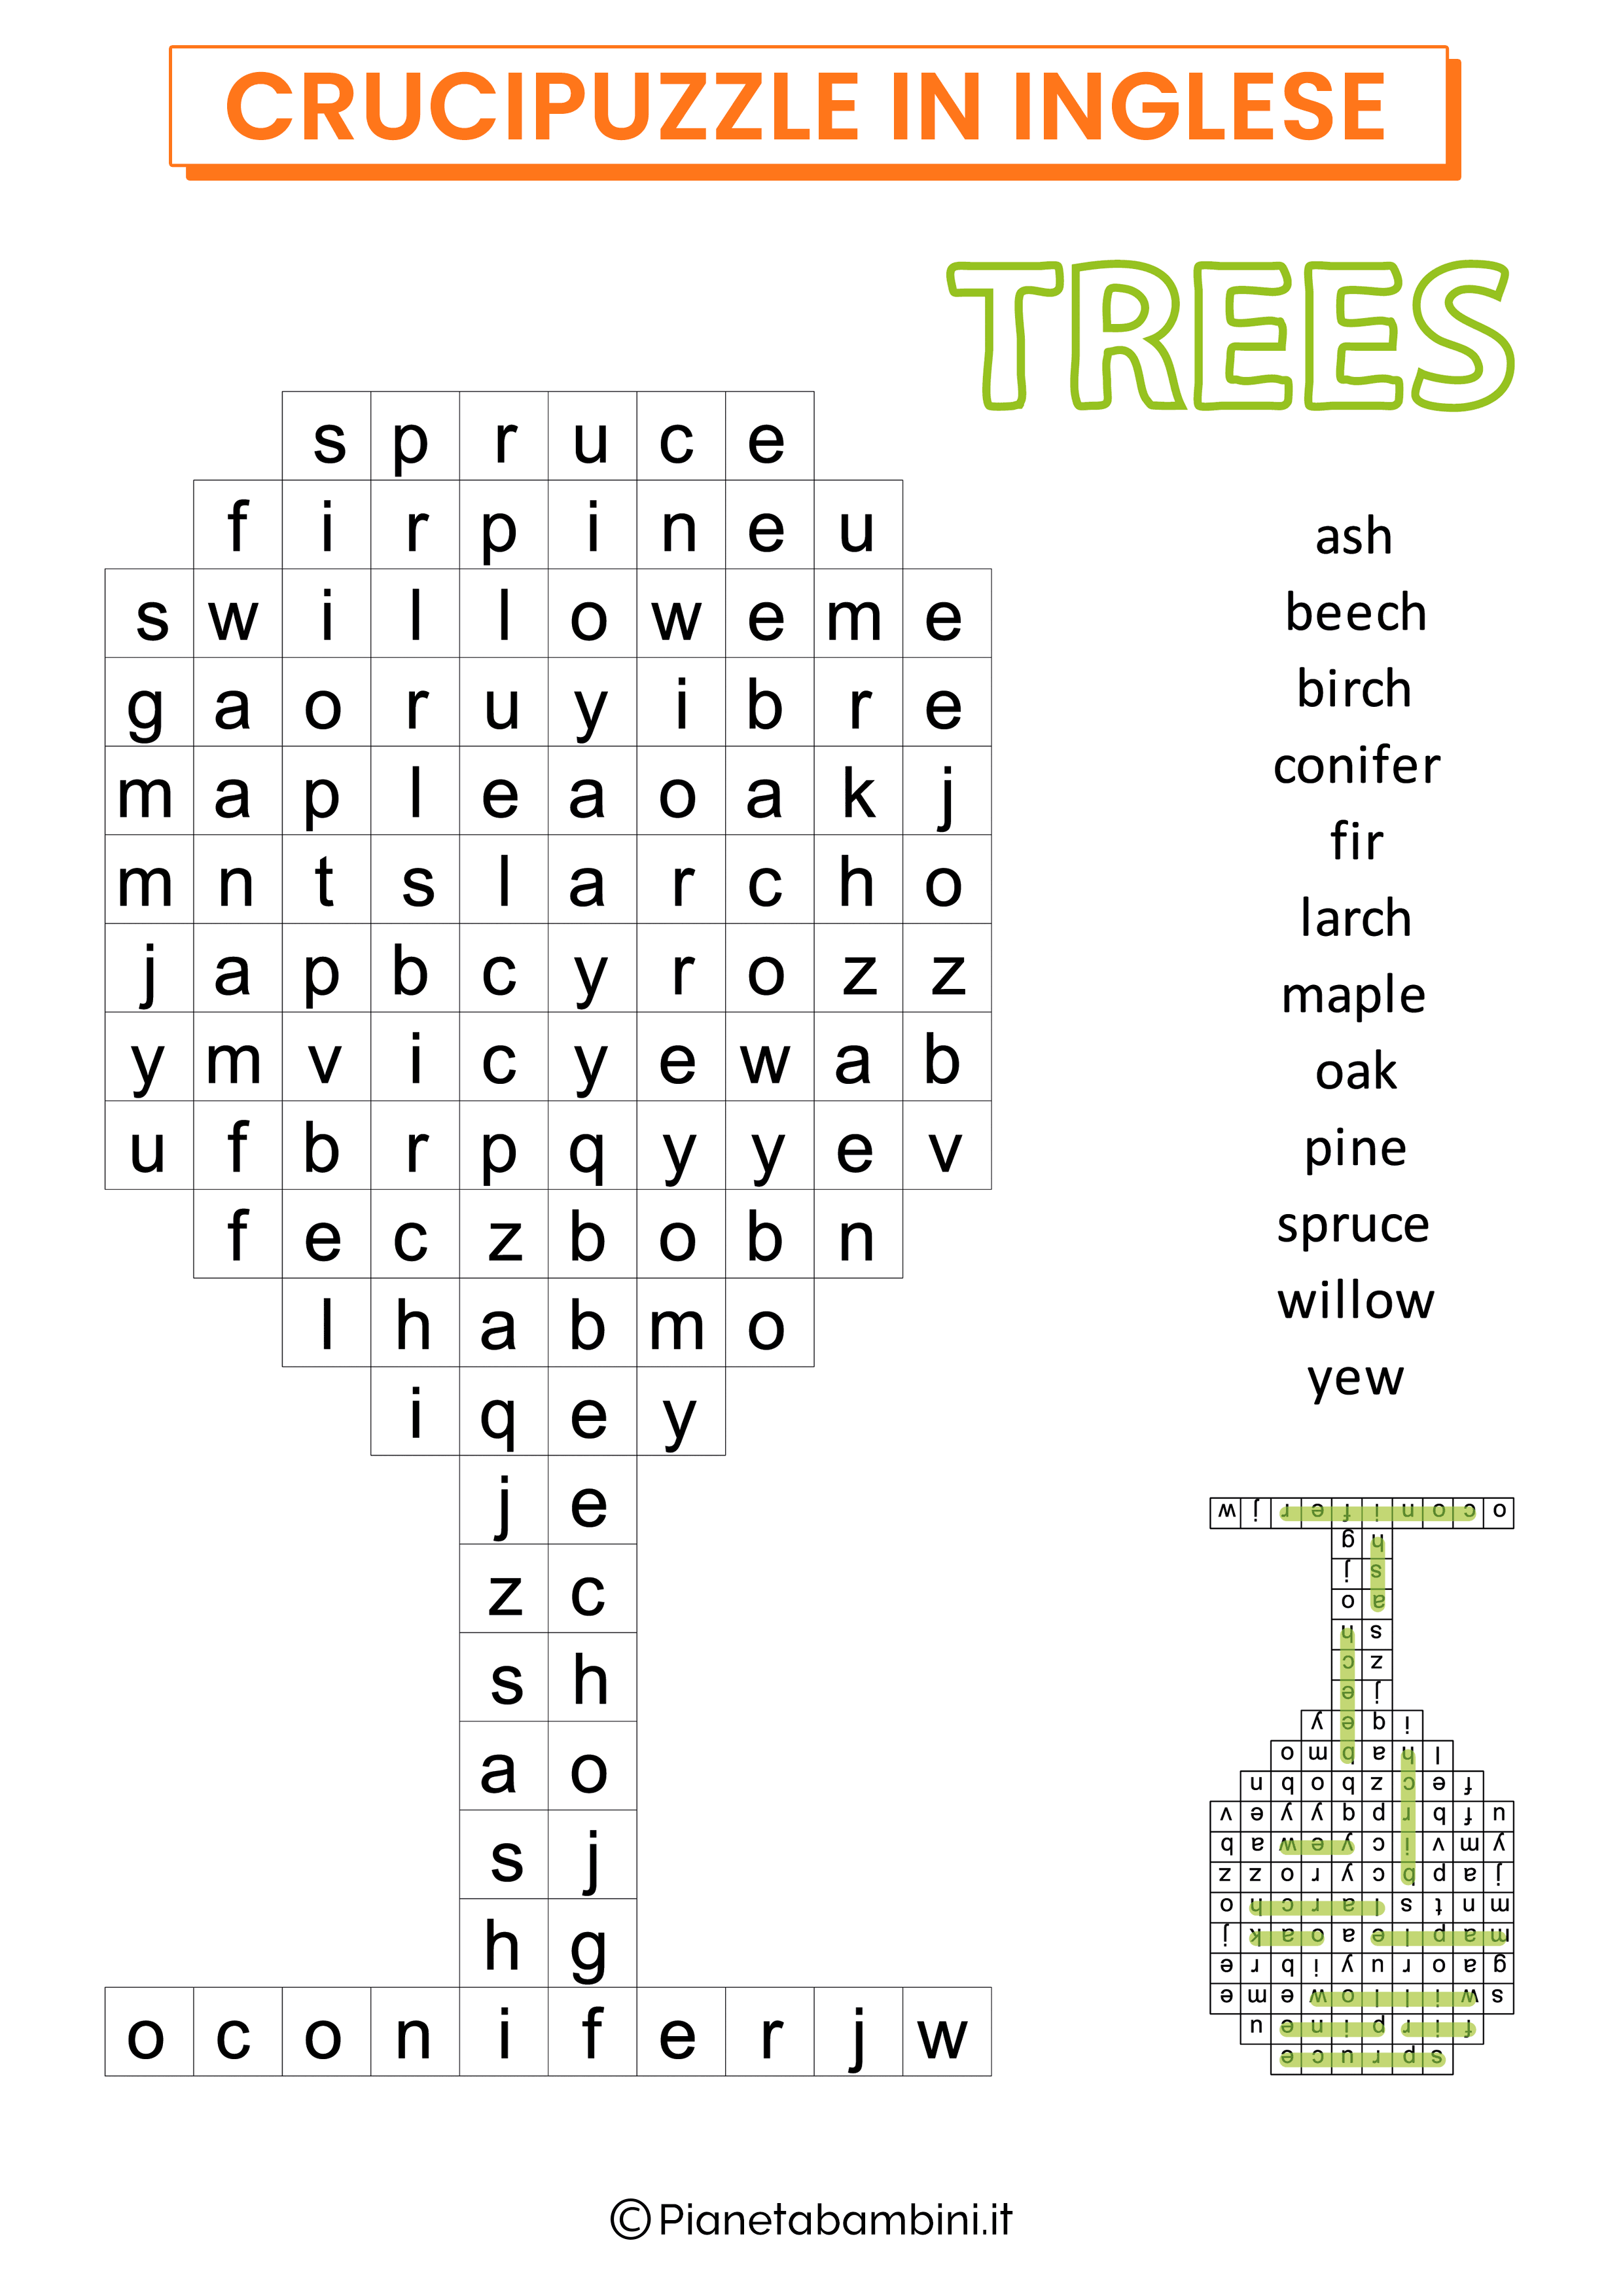 Crucipuzzle Inglese Trees da stampare